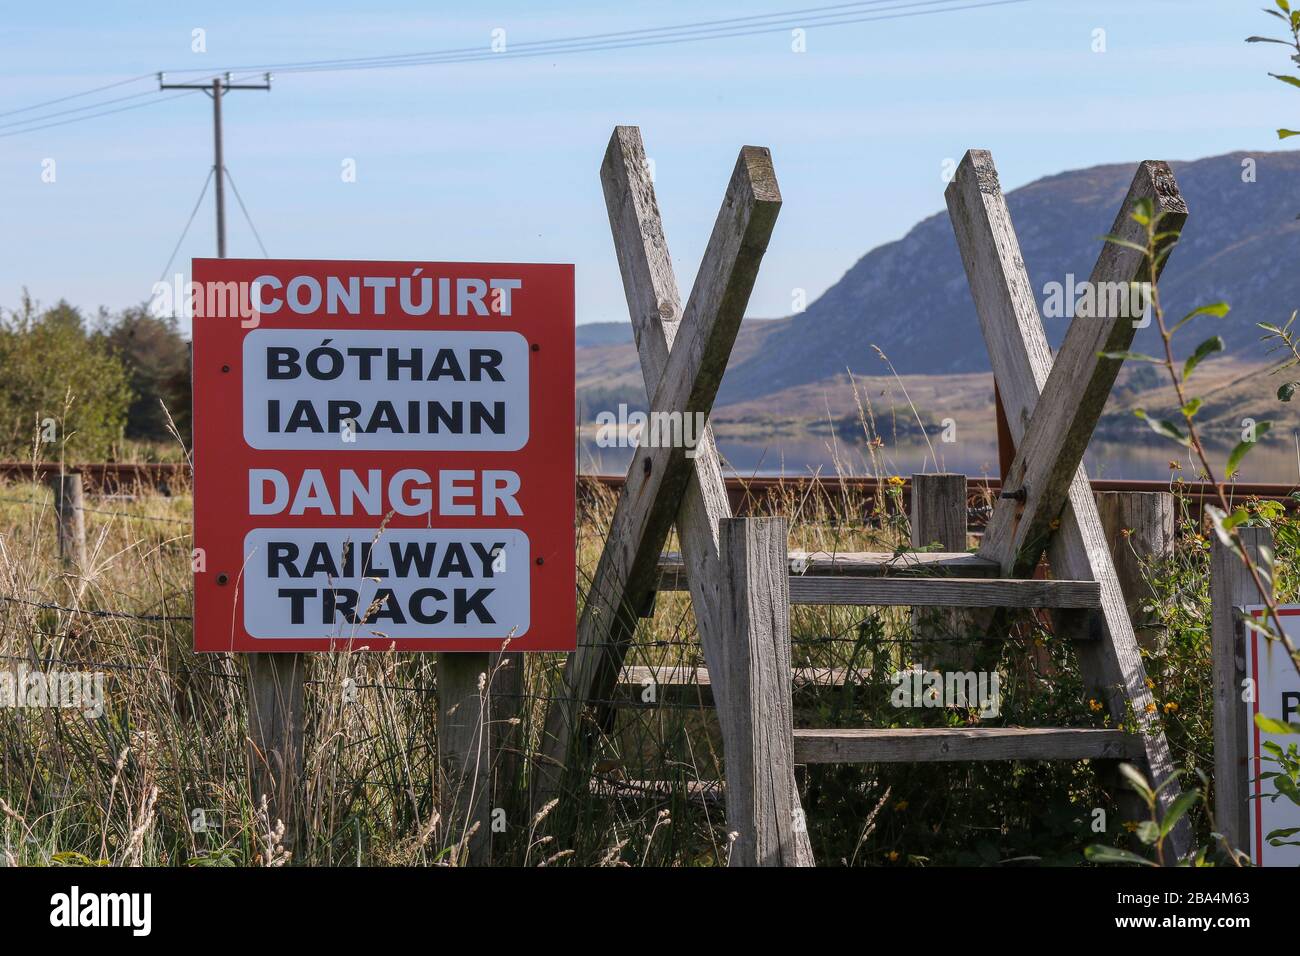 Ein rot-weißes Warnschild in irischer und englischer Sprache neben einem Holzstile an der Fintown Railway Track in einer Gaeltacht Gegend der Grafschaft Donegal, Irland. Stockfoto